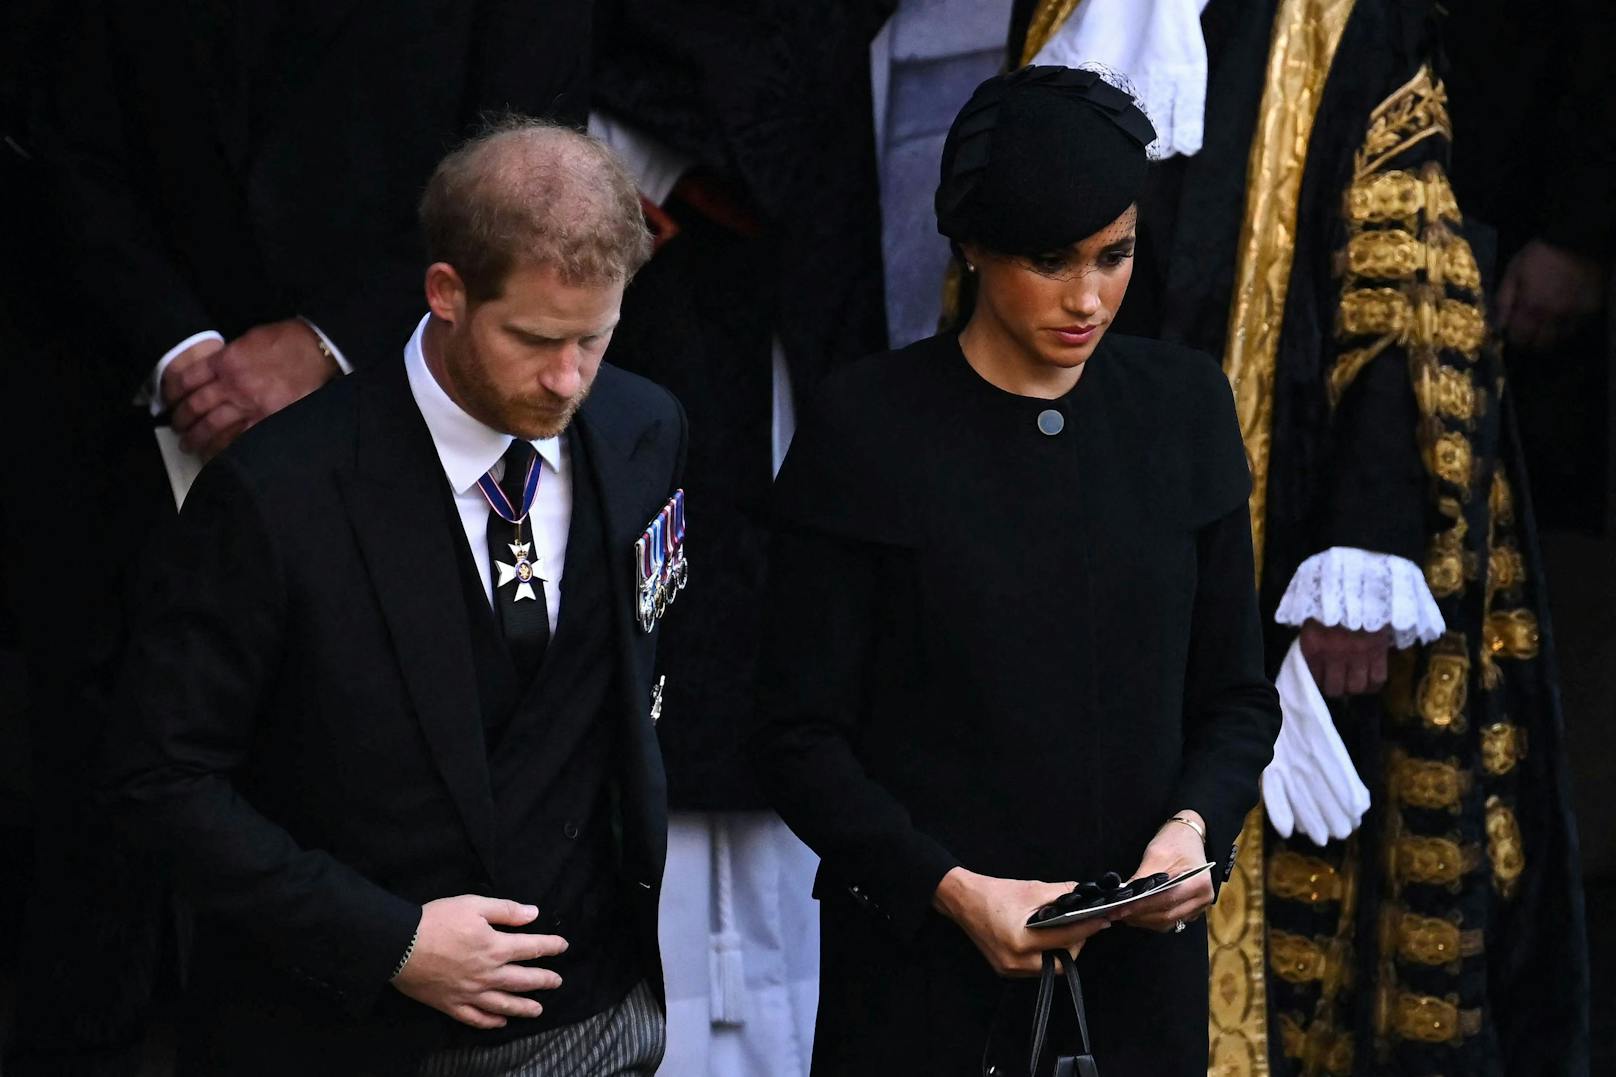 Der britische Prinz Harry, Herzog von Sussex, und Meghan, Herzogin von Sussex, verlassen nach einem Gottesdienst zum Empfang des Sarges von Königin Elizabeth II. in der Westminster Hall im Palace of Westminster in London.